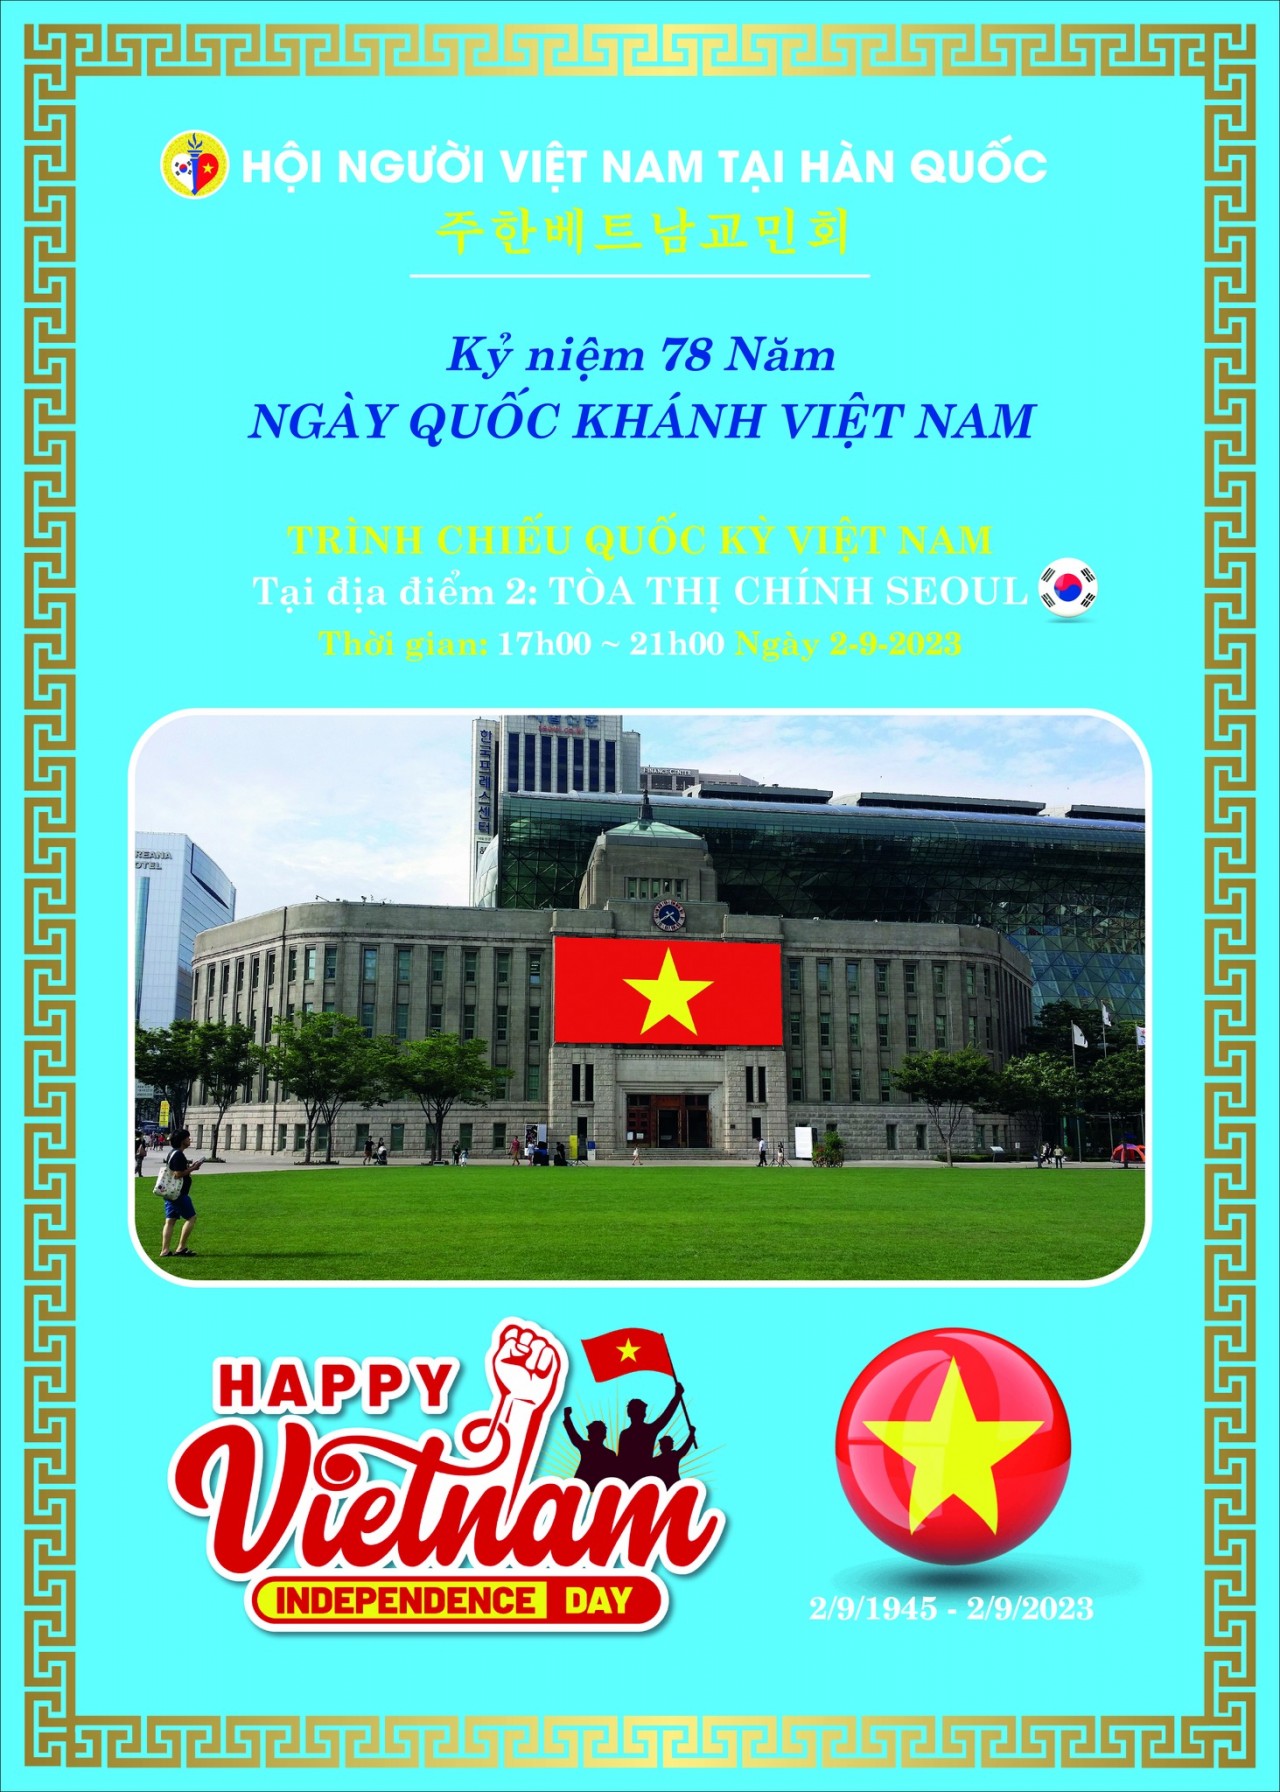 Hình ảnh quốc kỳ Việt Nam sẽ được trình chiếu tại Tòa thị chính Seoul, tháp Namsan (Hàn Quốc)